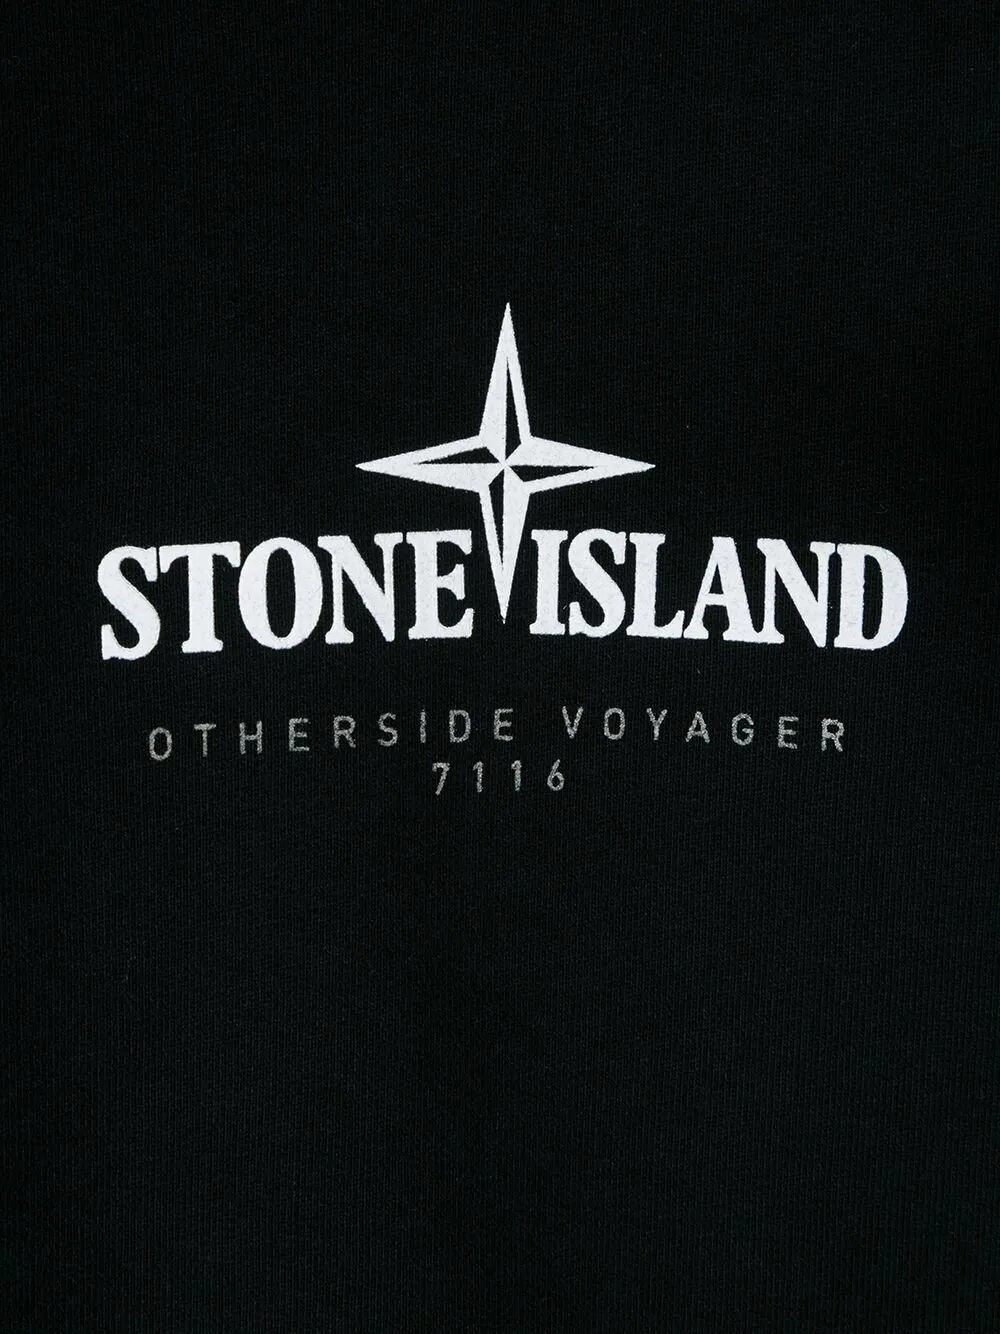 Логотипсанайленд. Стон Исланд. Стон Айленд лого. Stone Island logo.